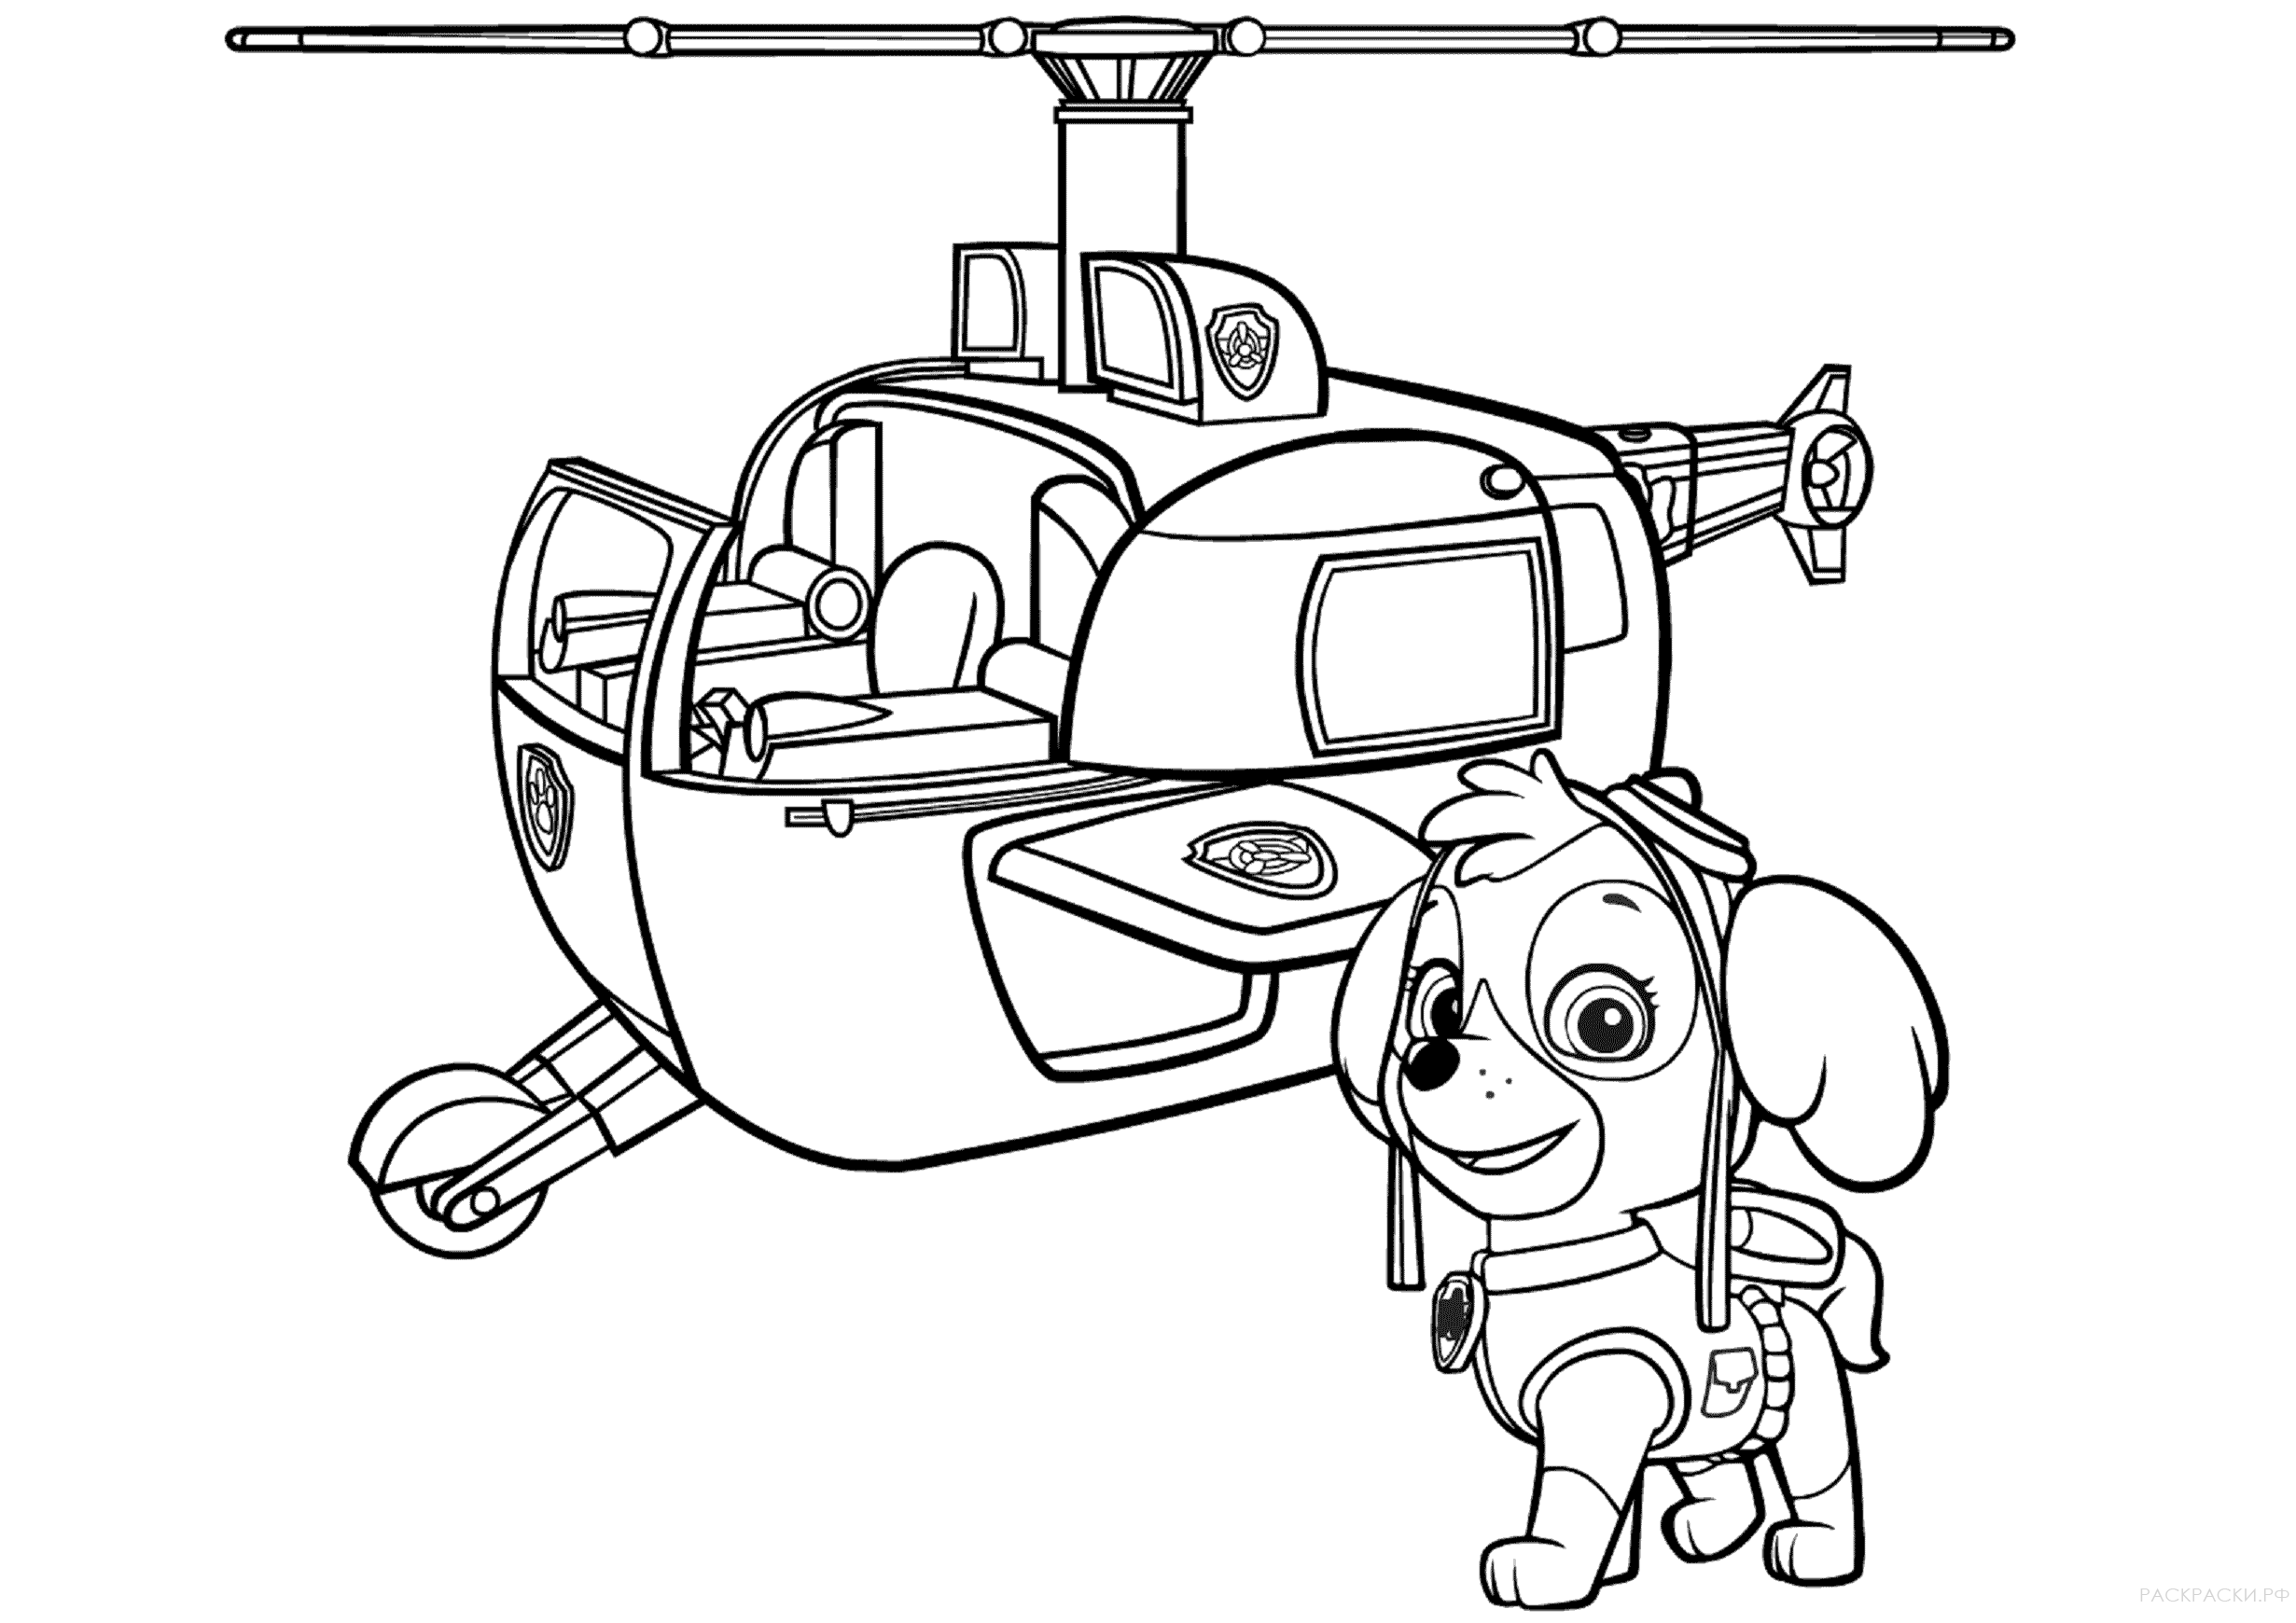 Раскраска Вертолет Ская из Щенячьего патруля